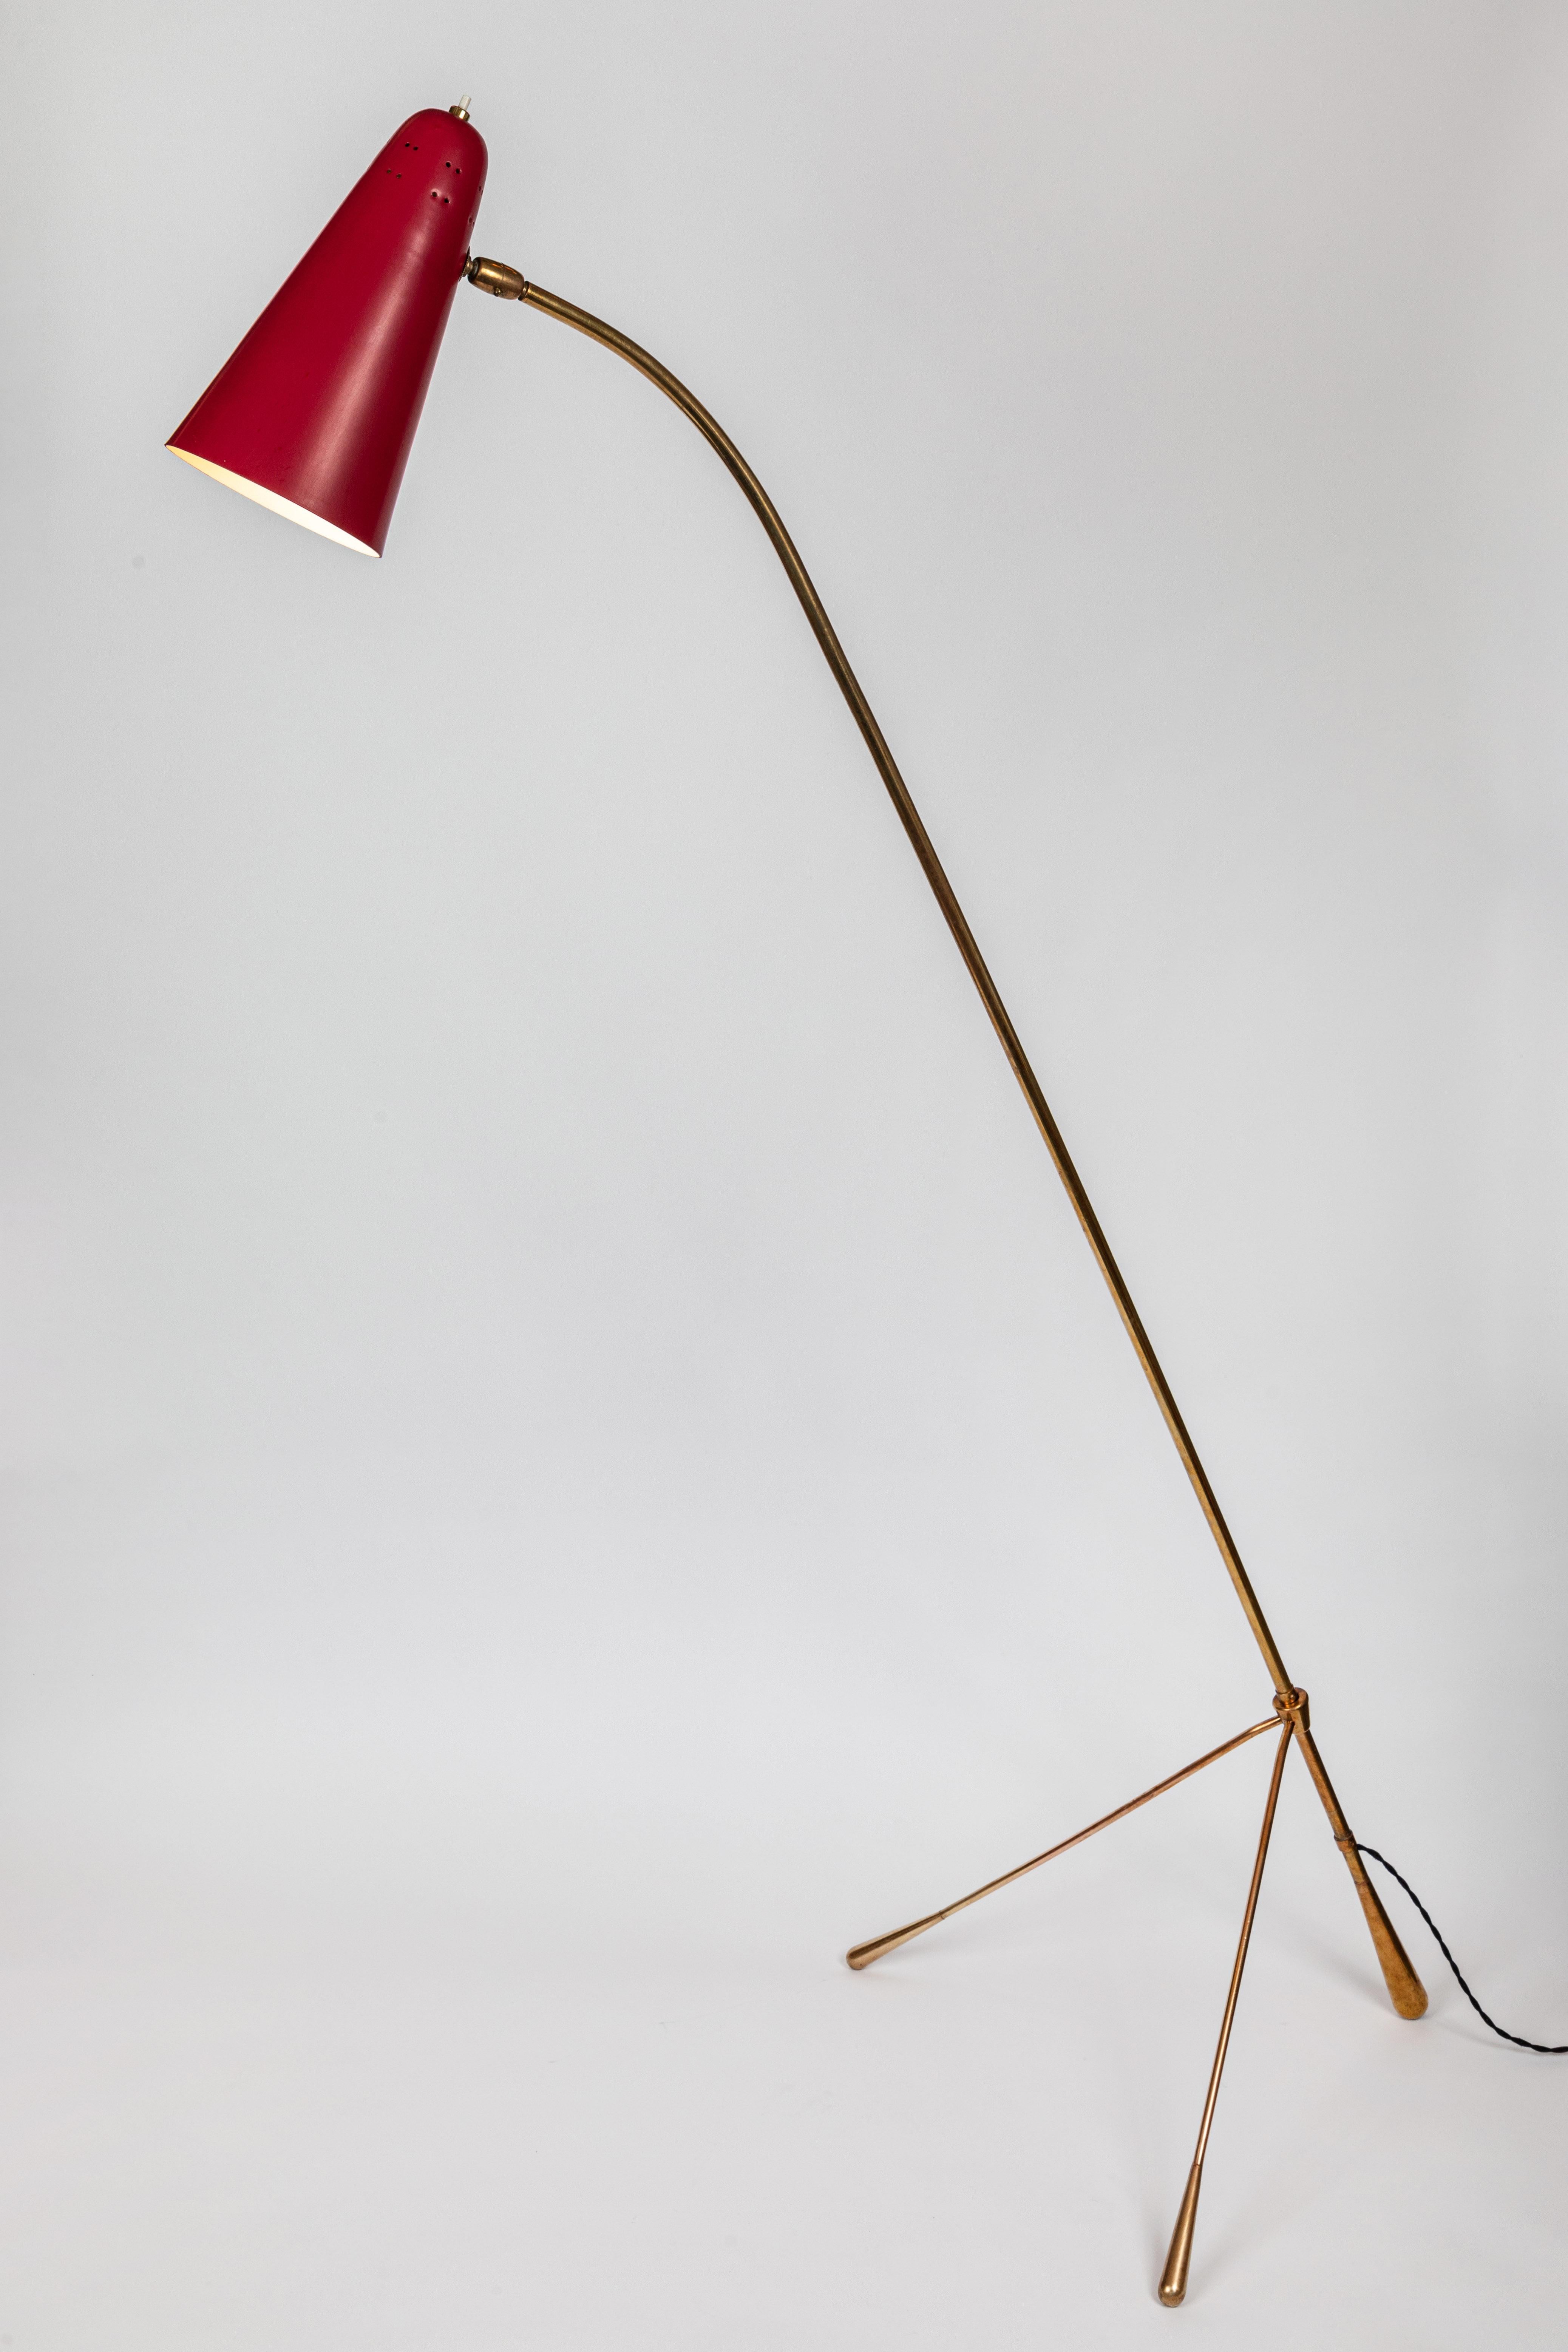 Große verstellbare Stehleuchte von Gilardi & Barzaghi aus den 1950er Jahren. Ein seltenes Exemplar aus rot emailliertem Metall mit perforiertem Schirm und einem skulpturalen Messingbass. Sowohl der Schirm als auch die Beine sind verstellbar, so dass